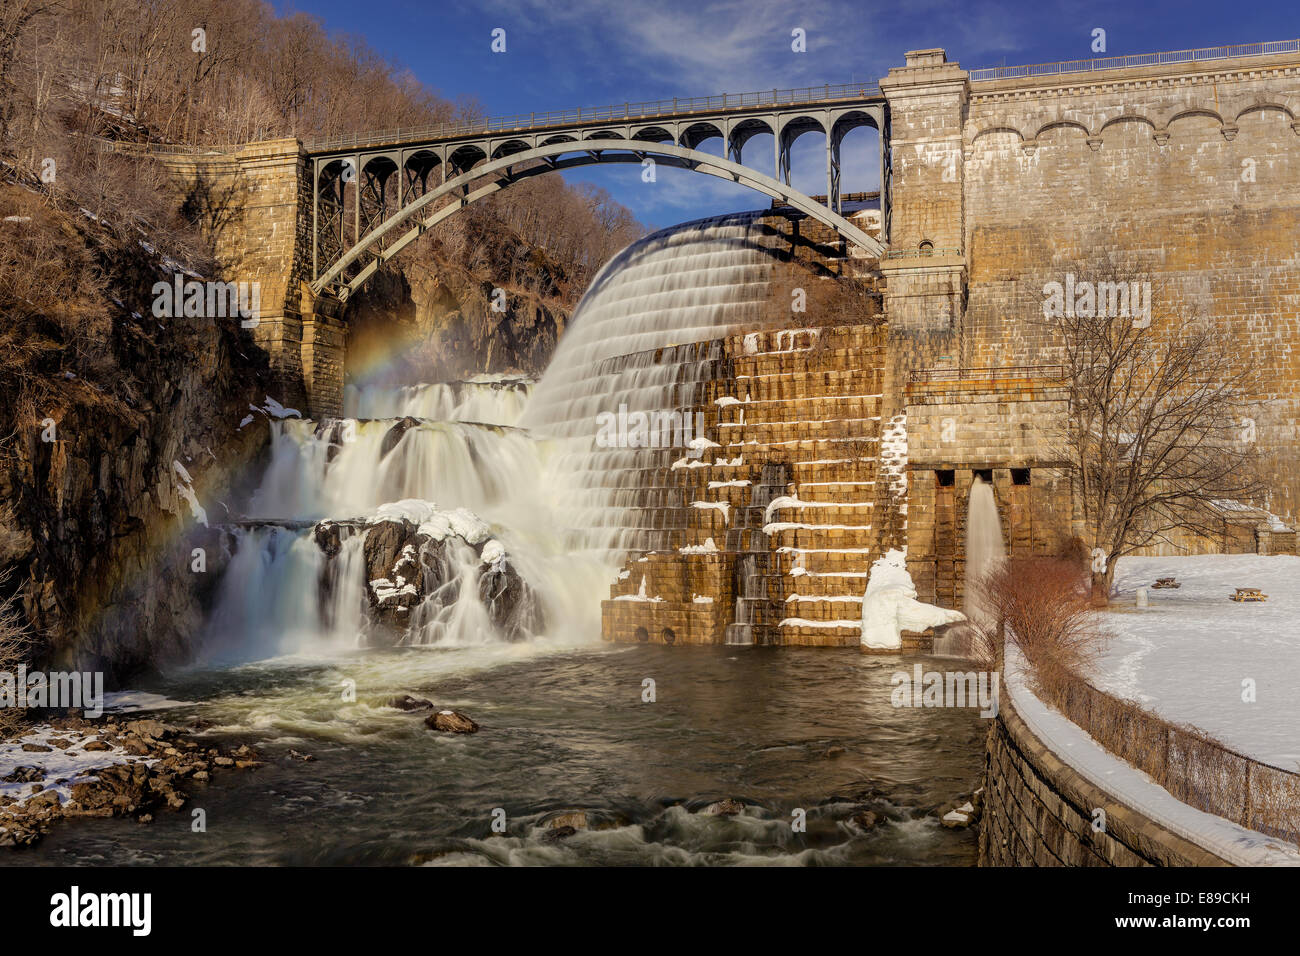 Nuovo Croton Dam cascata conosciuta anche come la Diga di Cornell durante un inverno freddo pomeriggio con un arcobaleno sopra le cascate. Alla diga è stato finalizzato nel 1906 ed è situato nella contea di Westchester. È parte della città di New York sistema di approvvigionamento di acqua. Foto Stock